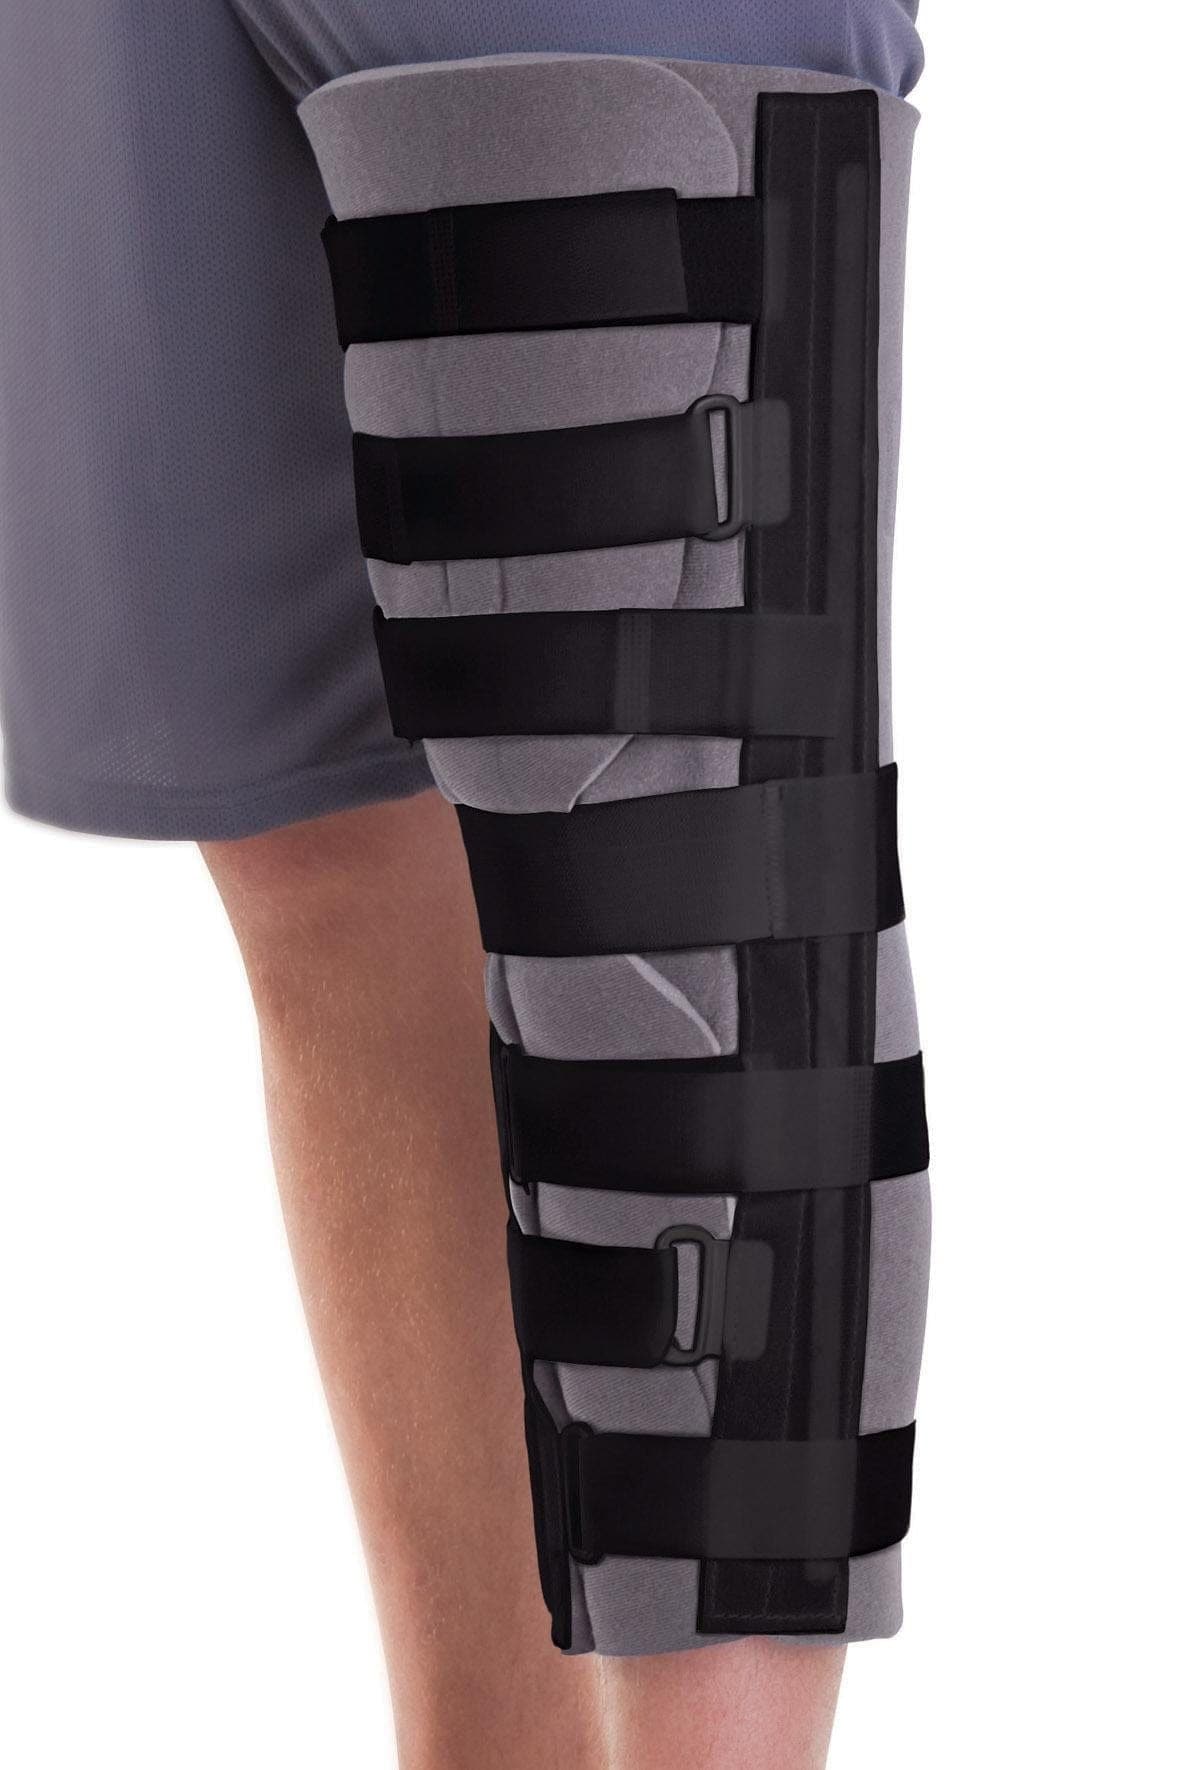 Medline Medline Cut-Away Knee Immobilizer